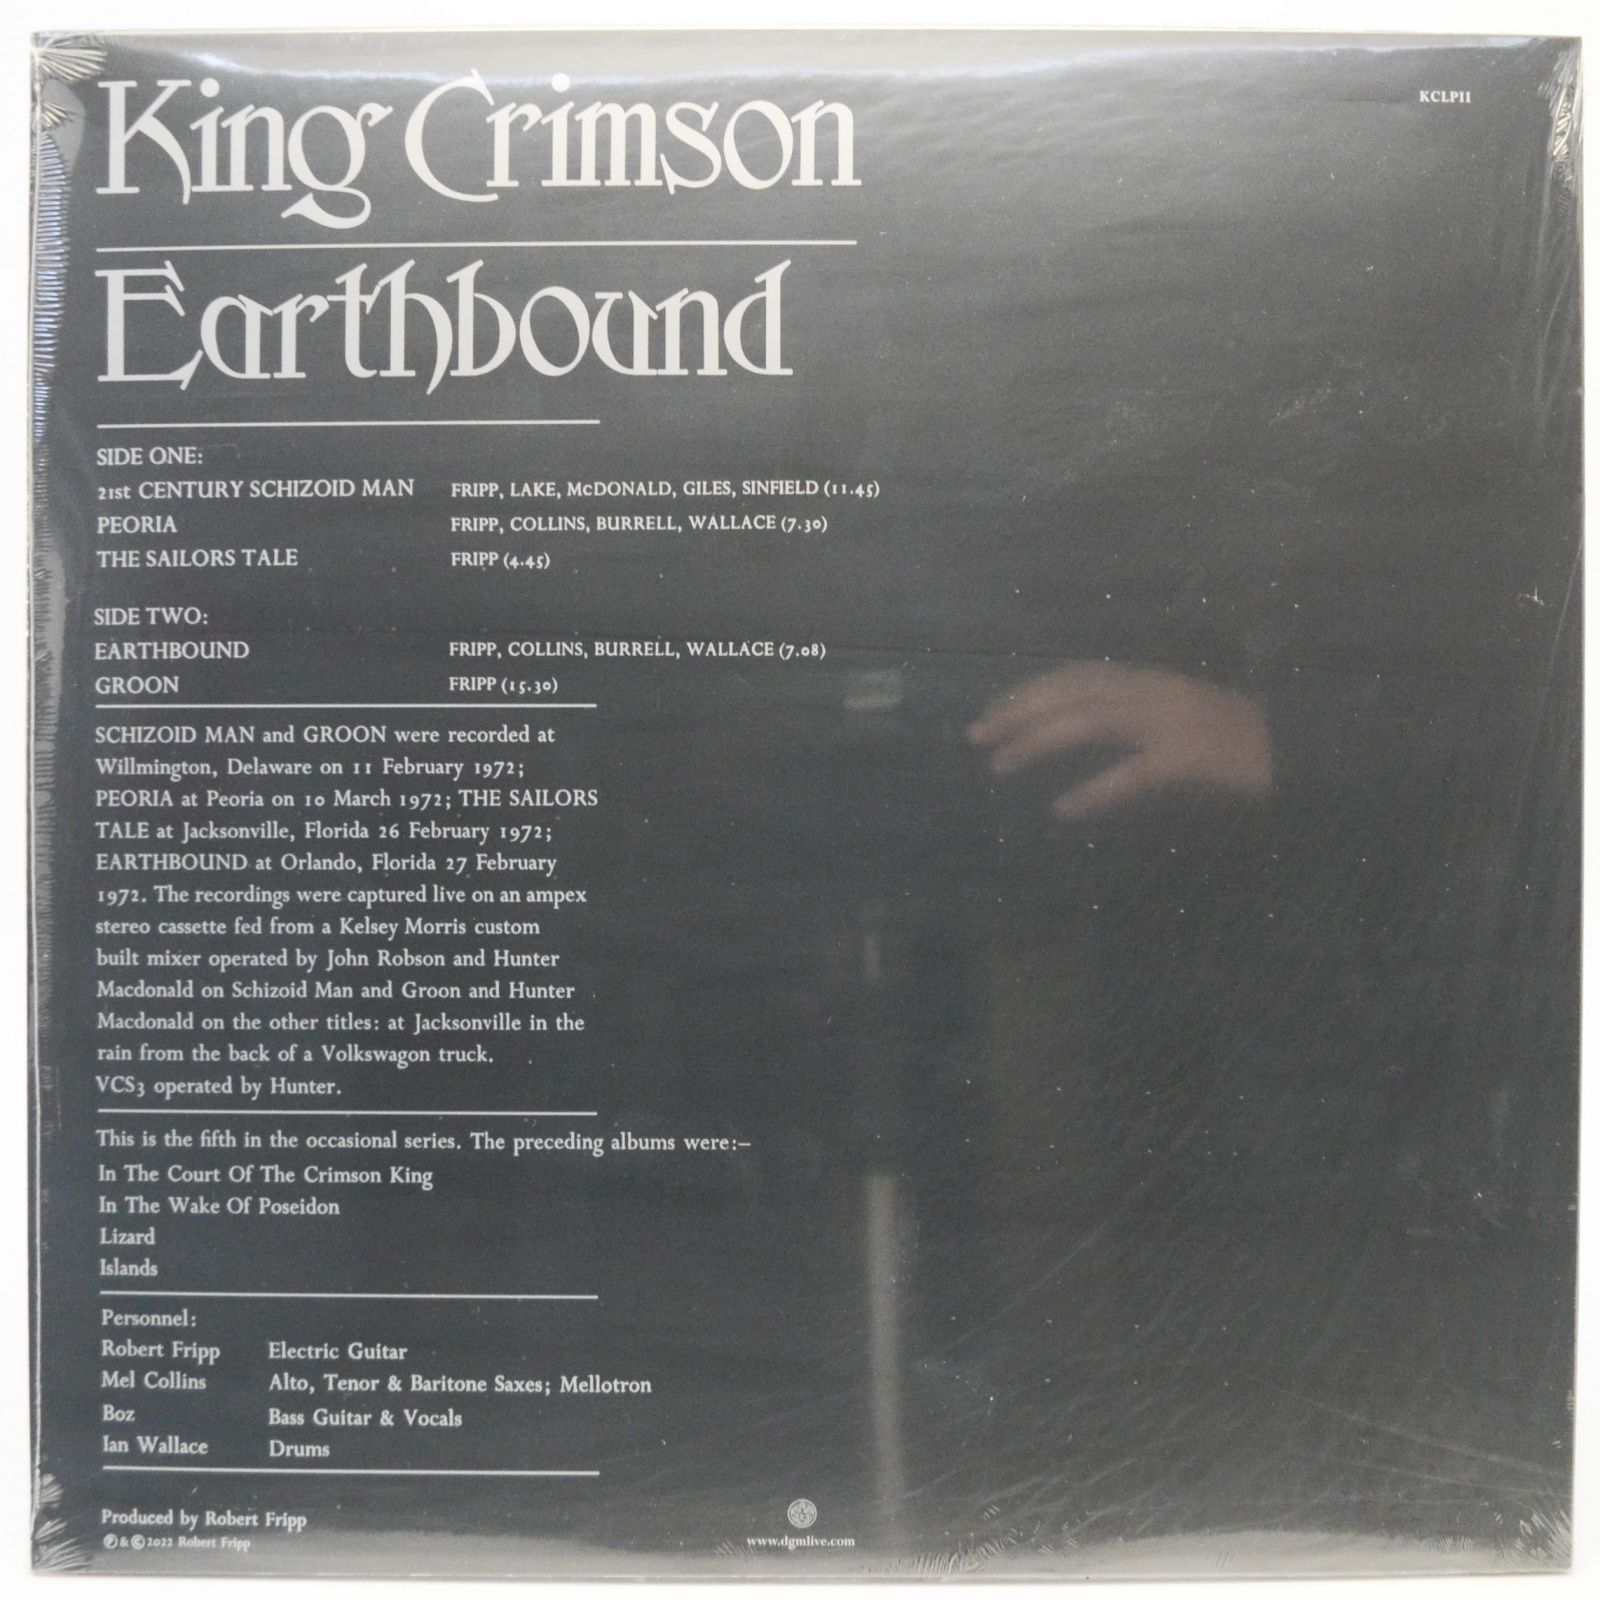 King Crimson — Earthbound (UK), 1972